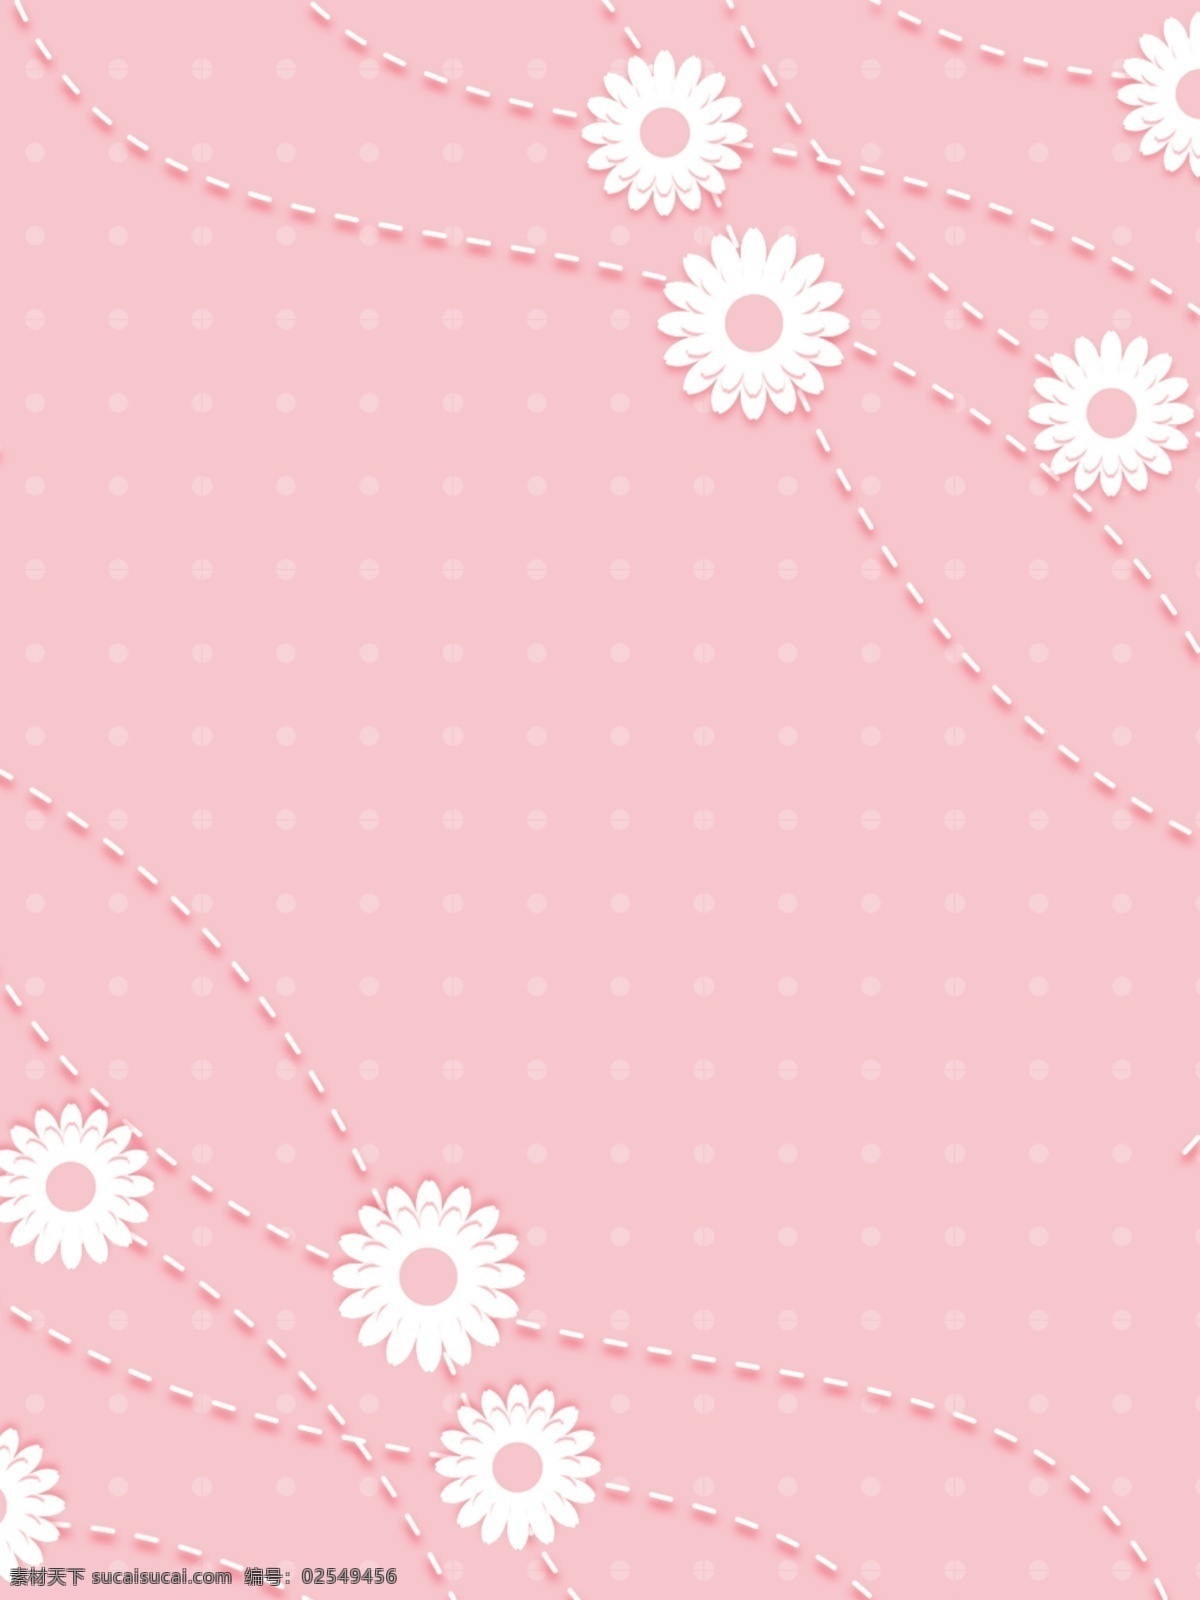 粉色 浪漫 小 花朵 清新 创意 背景 小清新 小花朵 粉色背景 背景素材 背景设计 唯美浪漫 线条 简约风